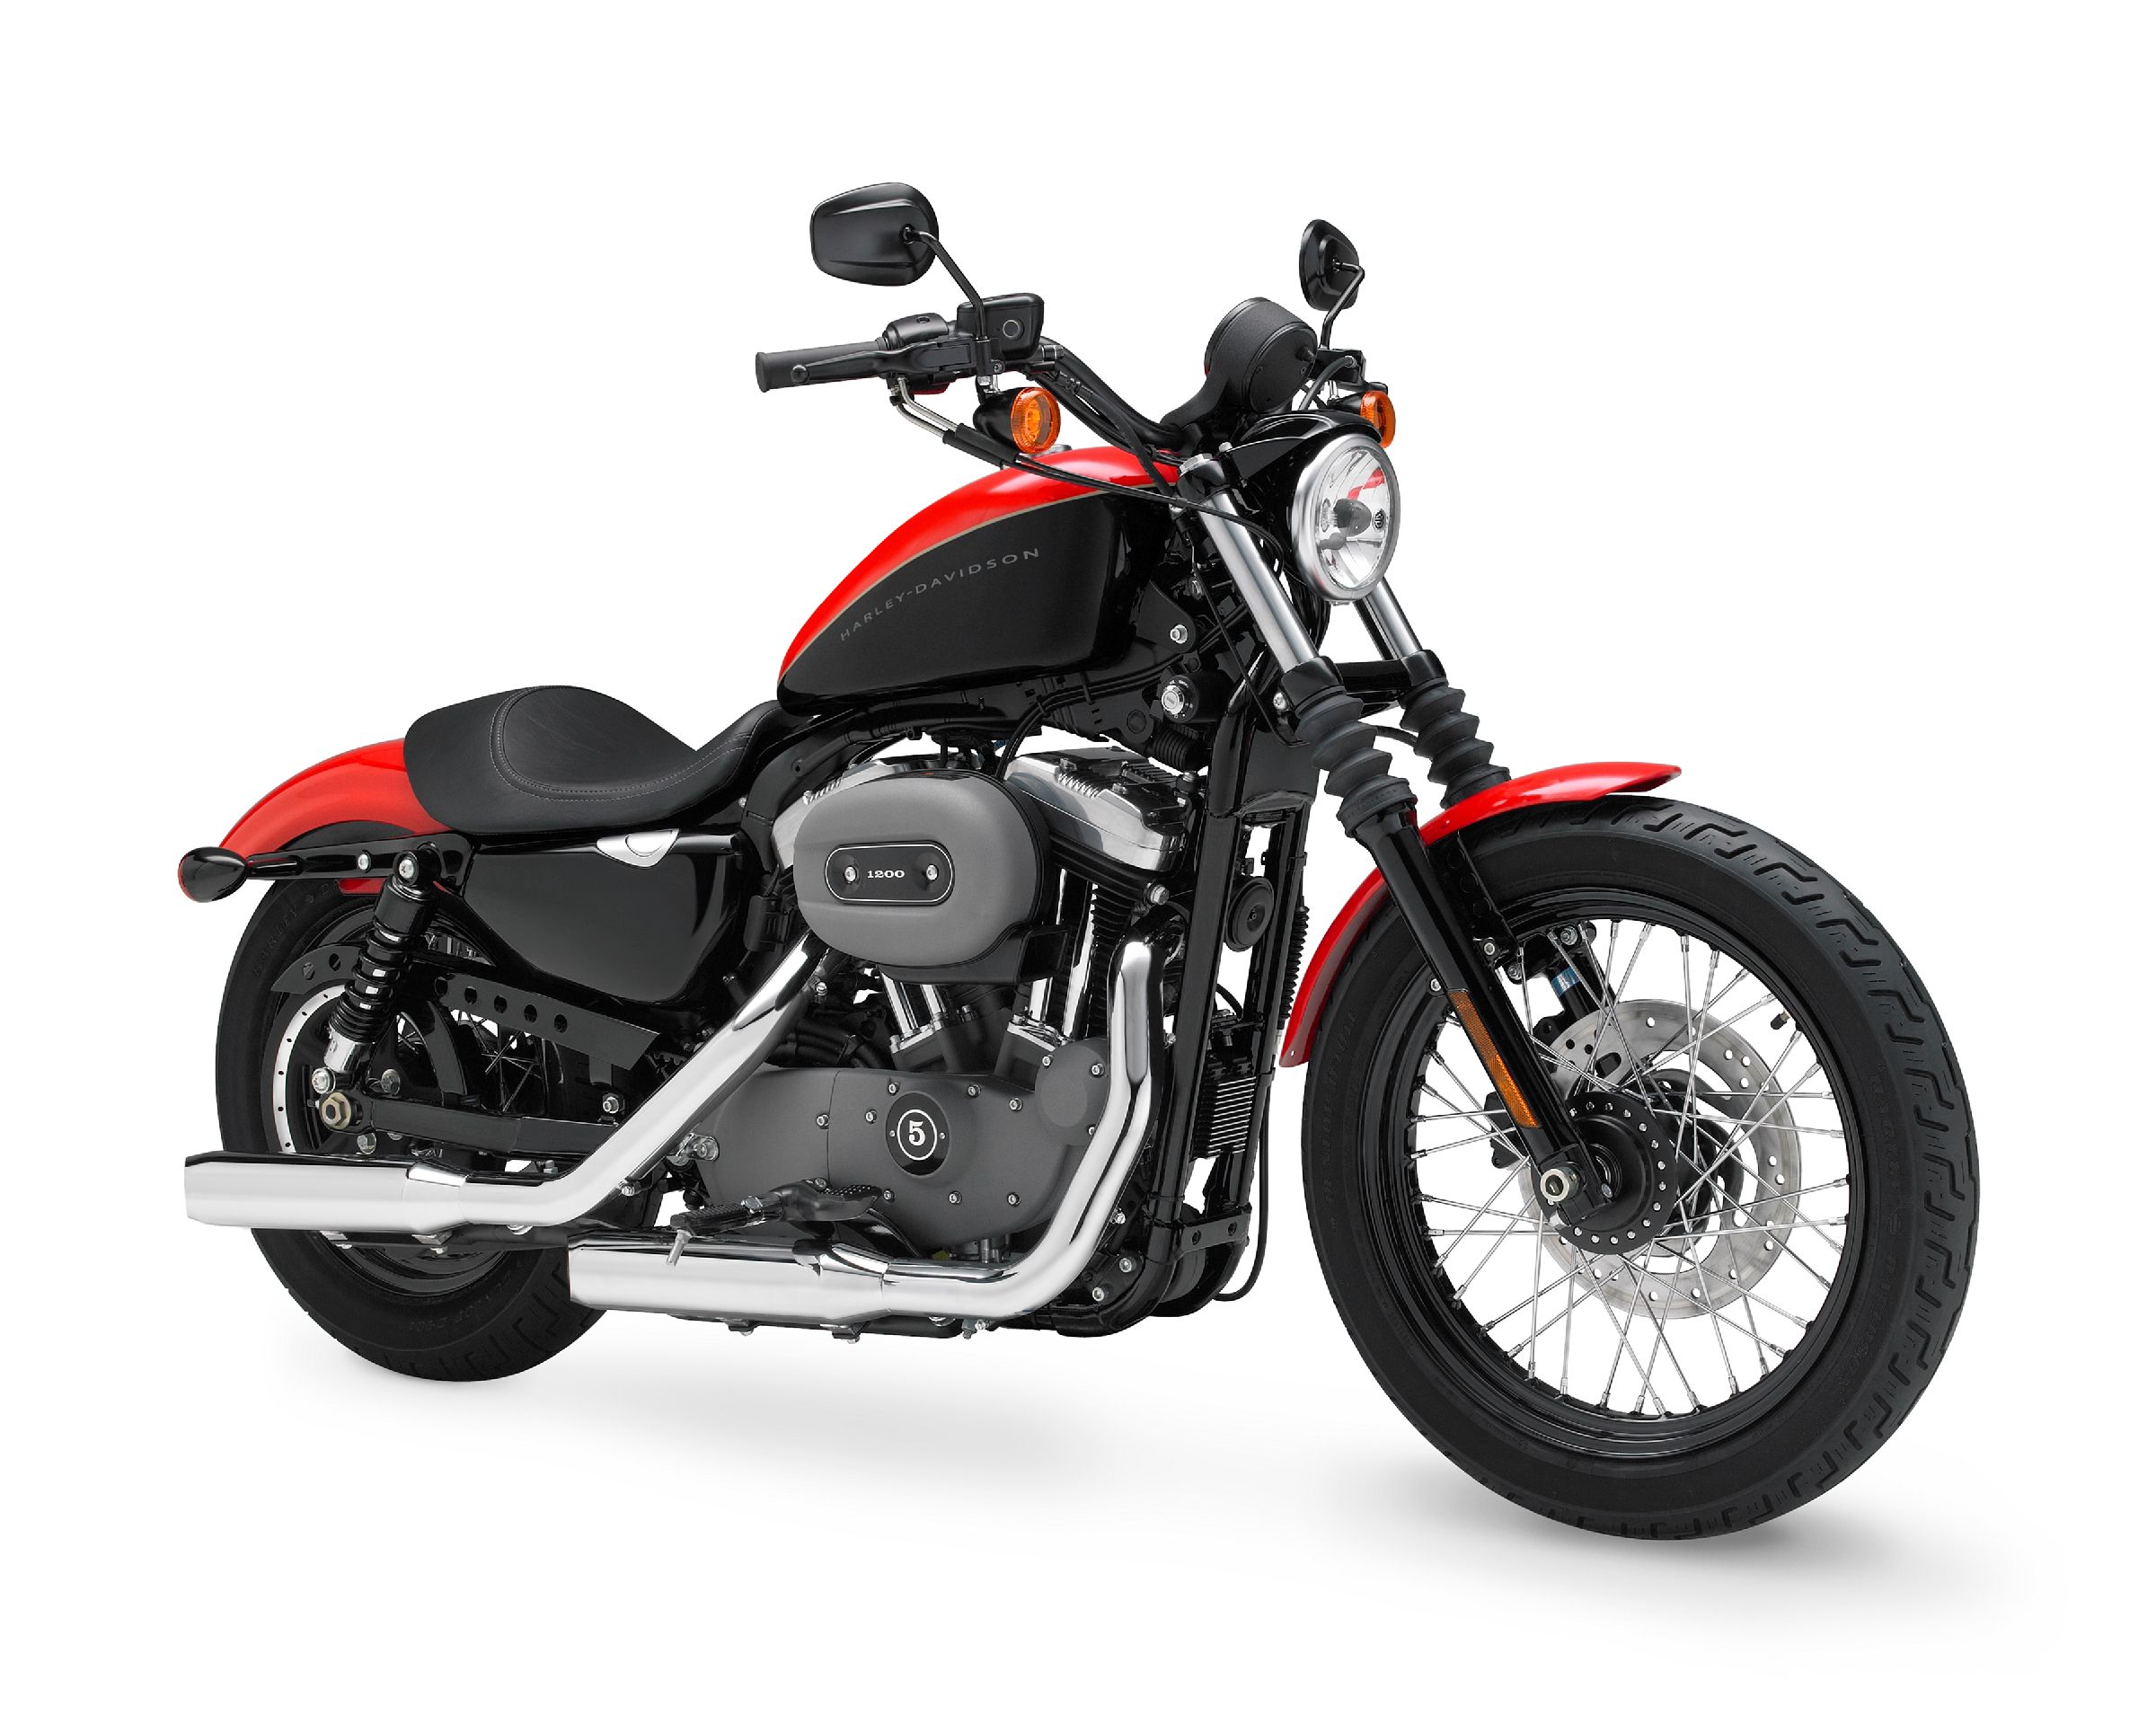  2010 Harley-Davidson Nightster